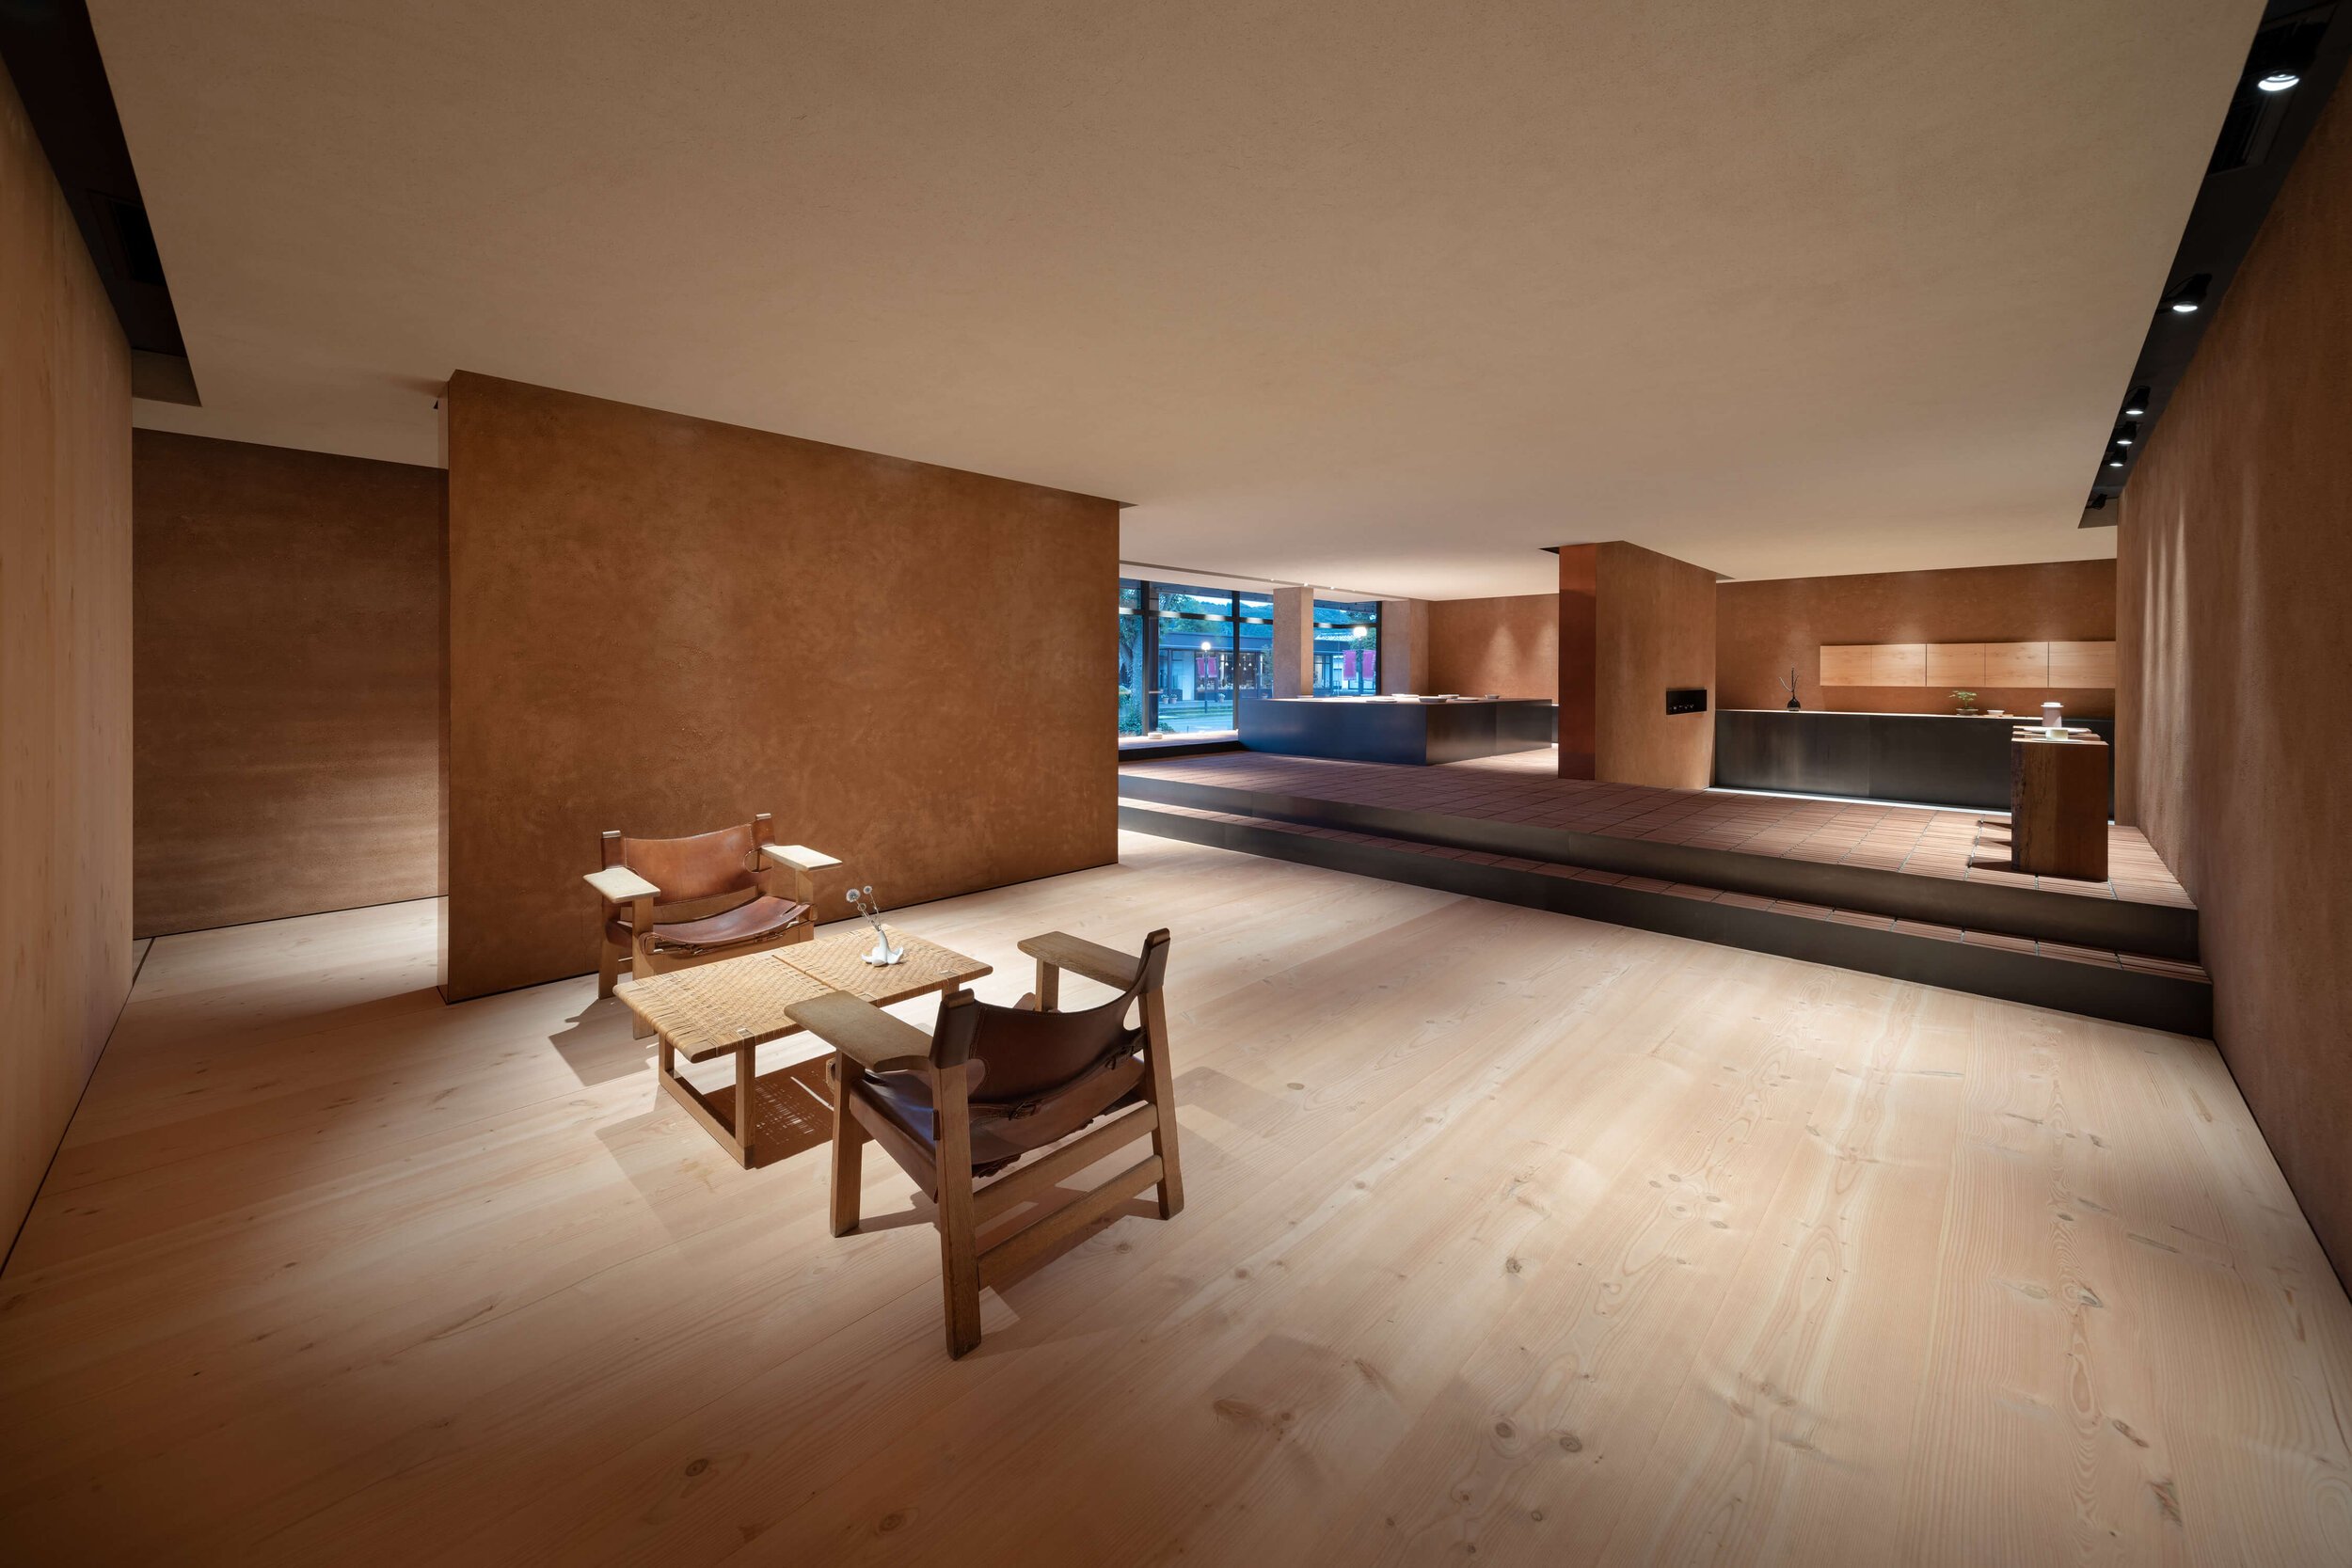  TERUHIRO YANAGIHARA STUDIOの柳原照弘がデザインした1616/arita japan 有田ショールームとアンティーク家具 